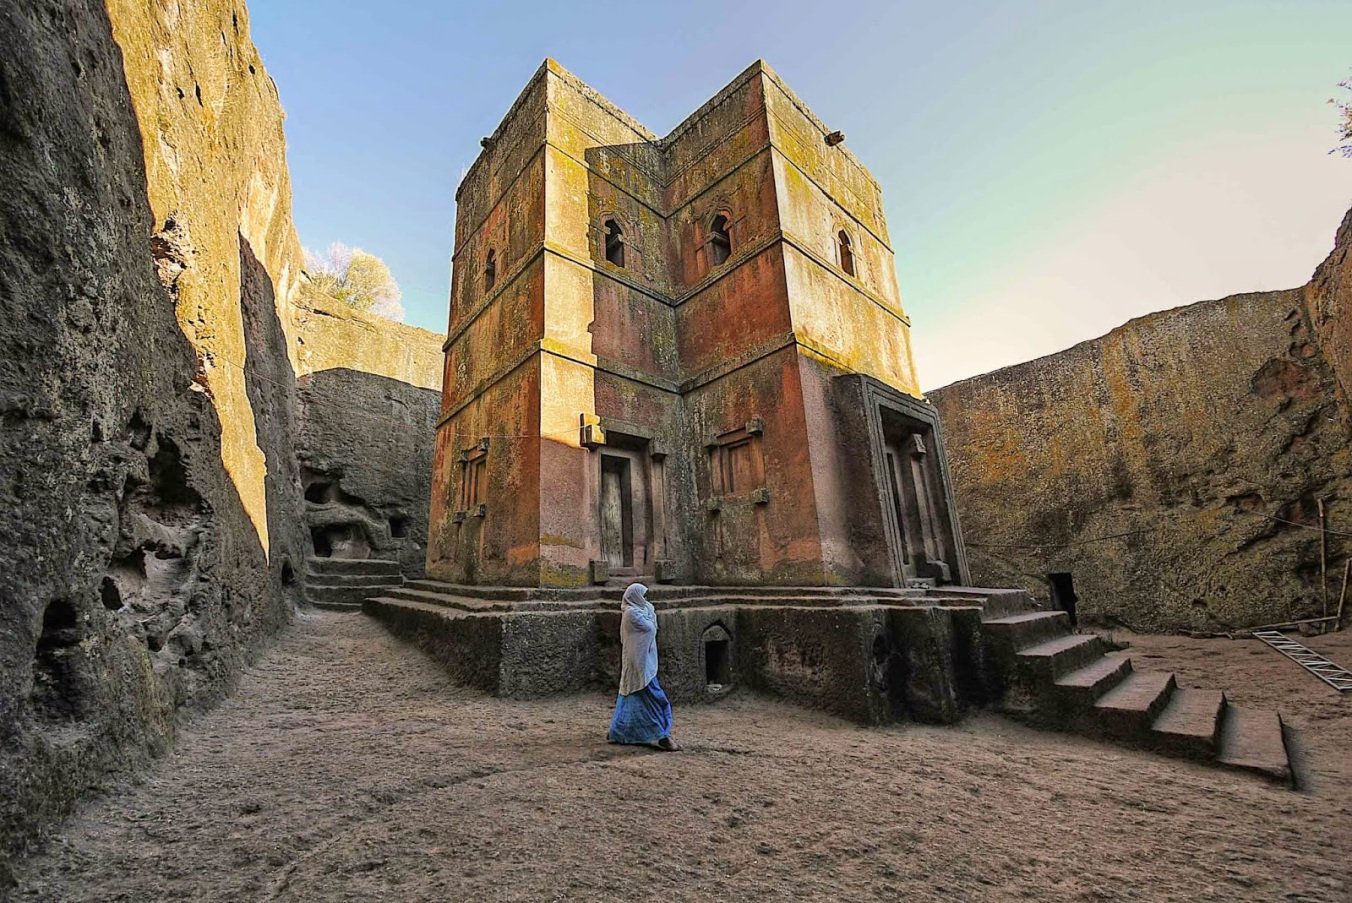 Храм в эфиопии в скале. Церковь Святого Георгия (Лалибэла). Лалибела Эфиопия храм. Скальные церкви Лалибэлы. Эфиопия подземные храмы Лалибелы.